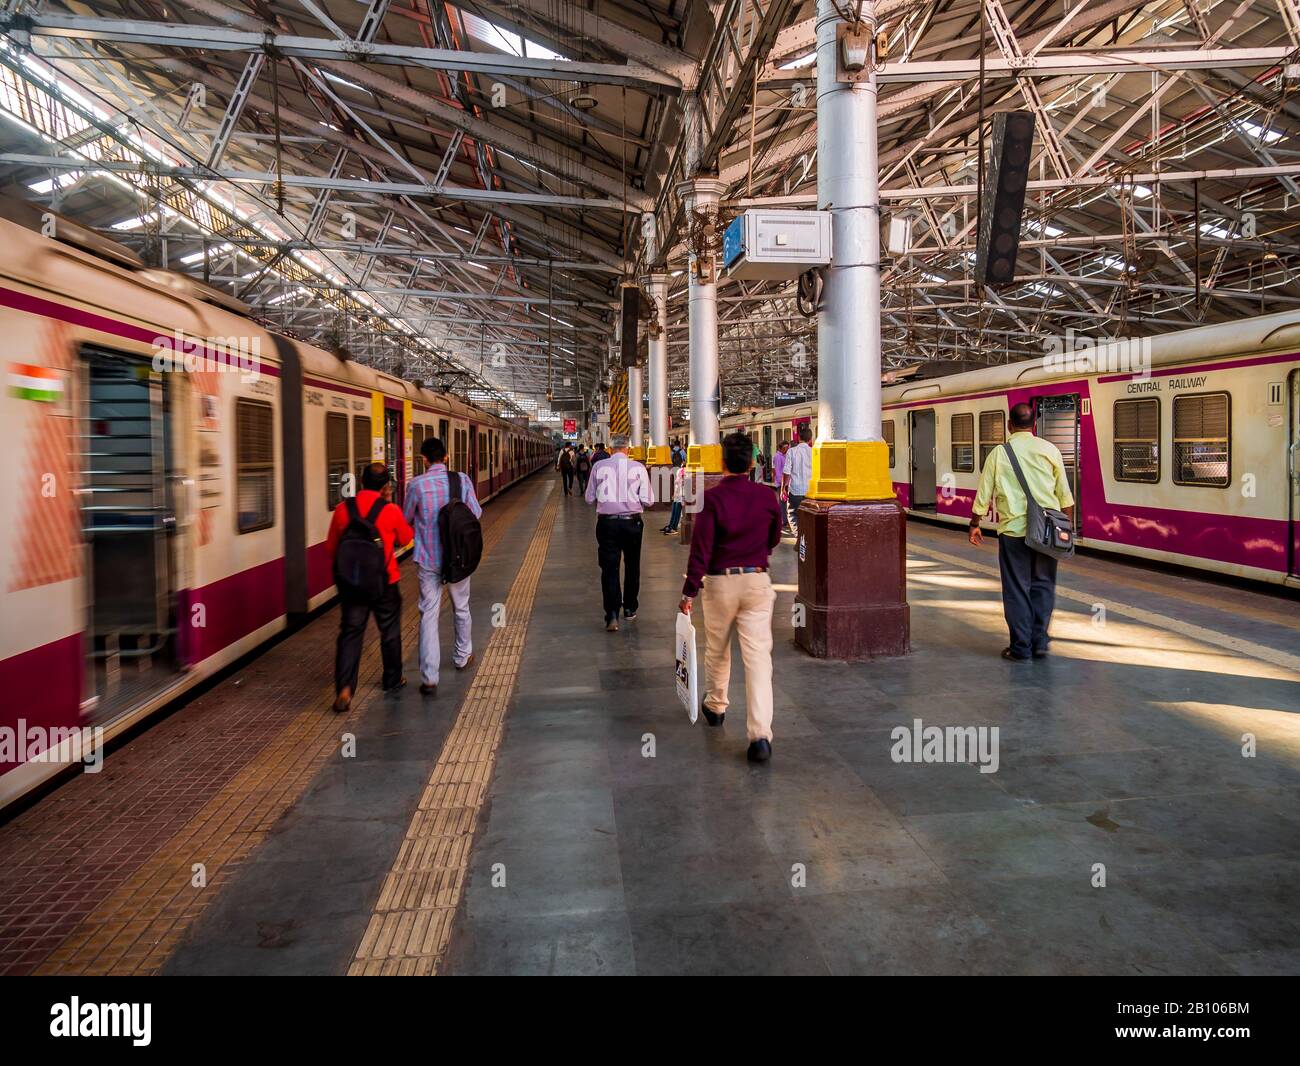 Mumbai, Inde - 18 décembre 2019 : Mumbai Suburban Railway, l'un des systèmes de trains de banlieue les plus actifs au monde ayant le surpeuplement le plus grave Banque D'Images